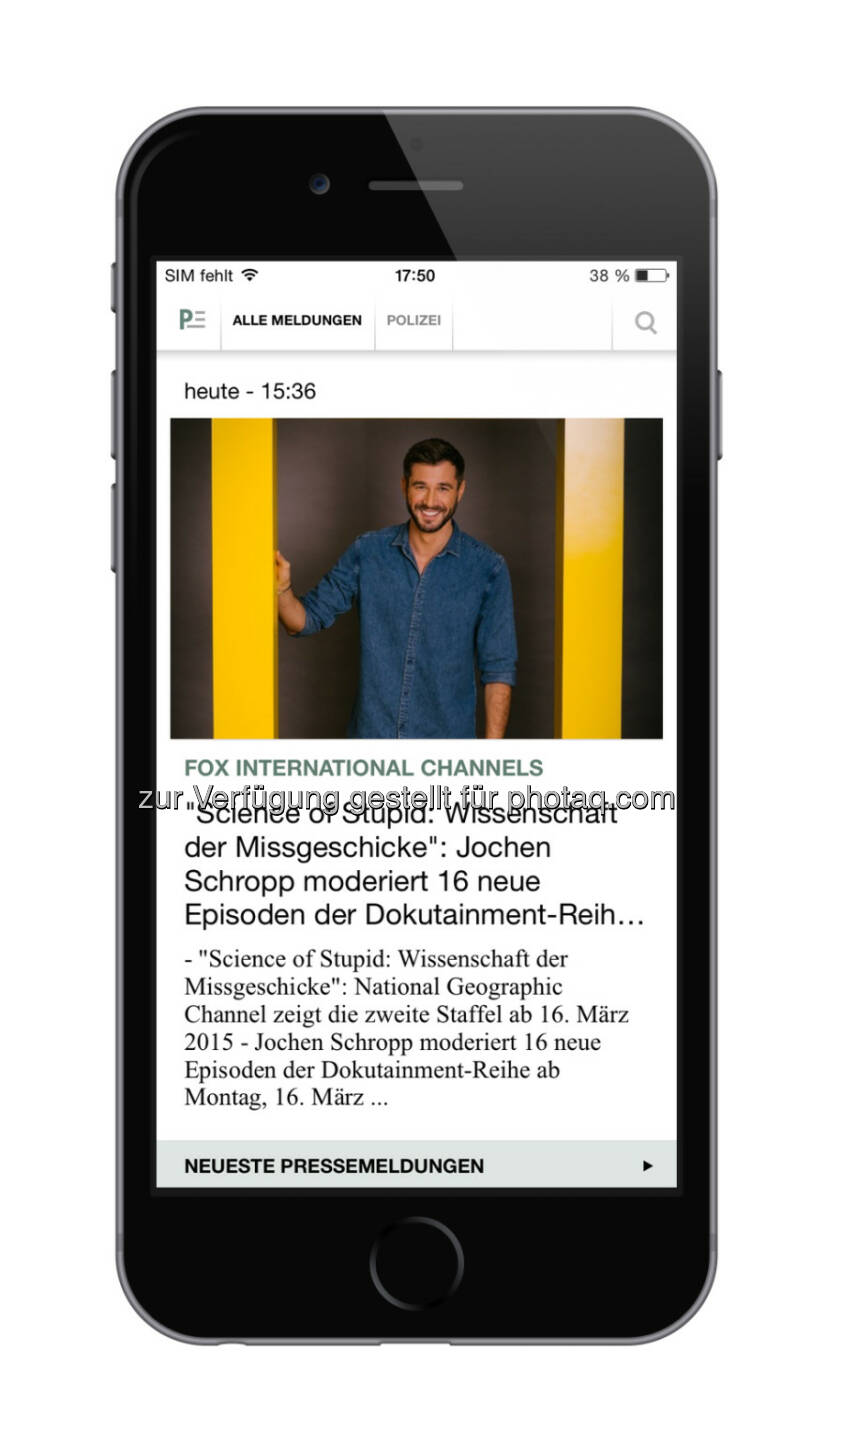 news aktuell GmbH: Presseportal App jetzt im neuen Design erhältlich - schon fast eine halbe Million Downloads